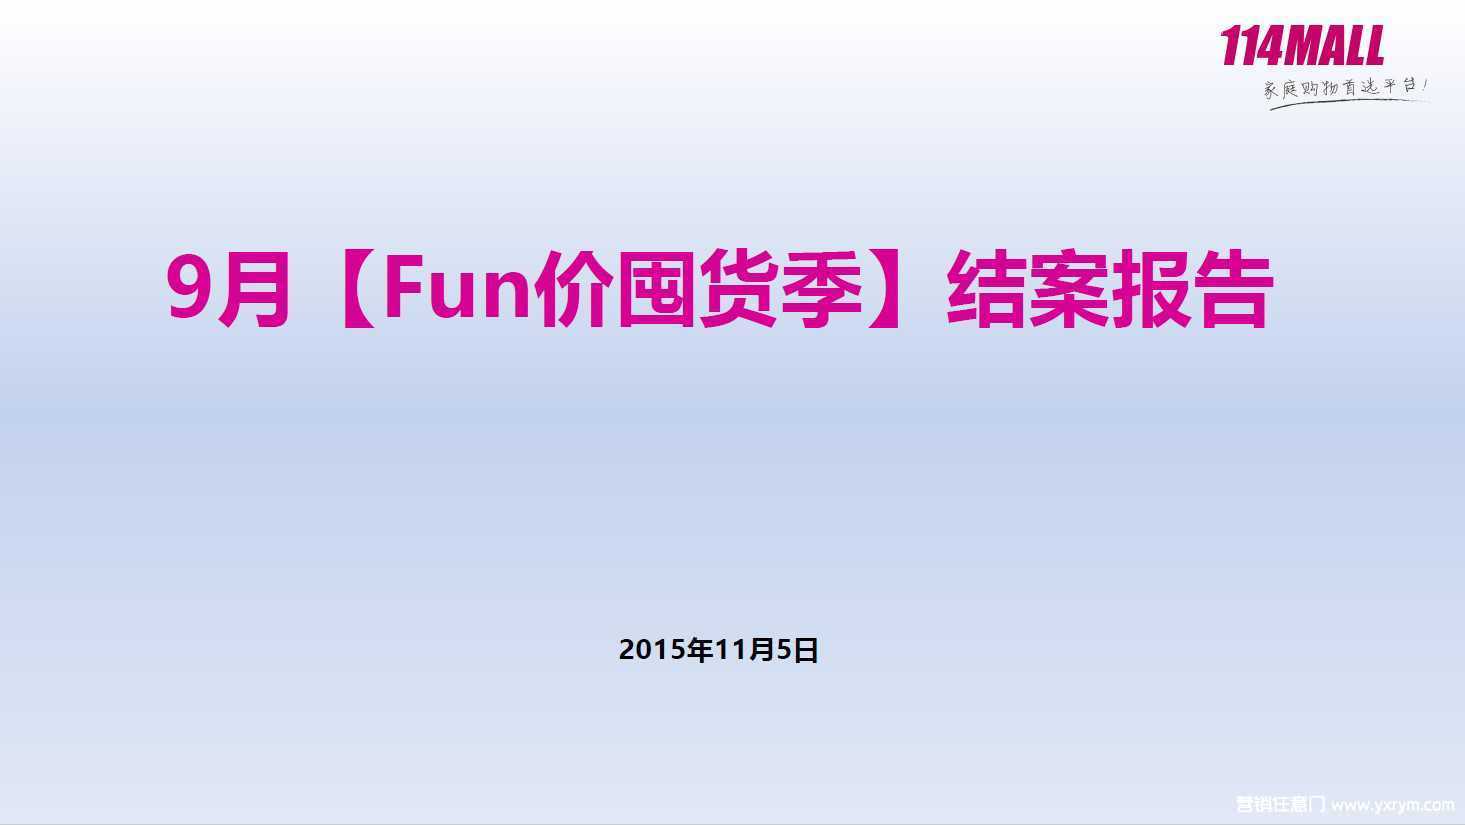 【营销任意门】114MALL2015年9月“Fun价囤货季”结案报告00